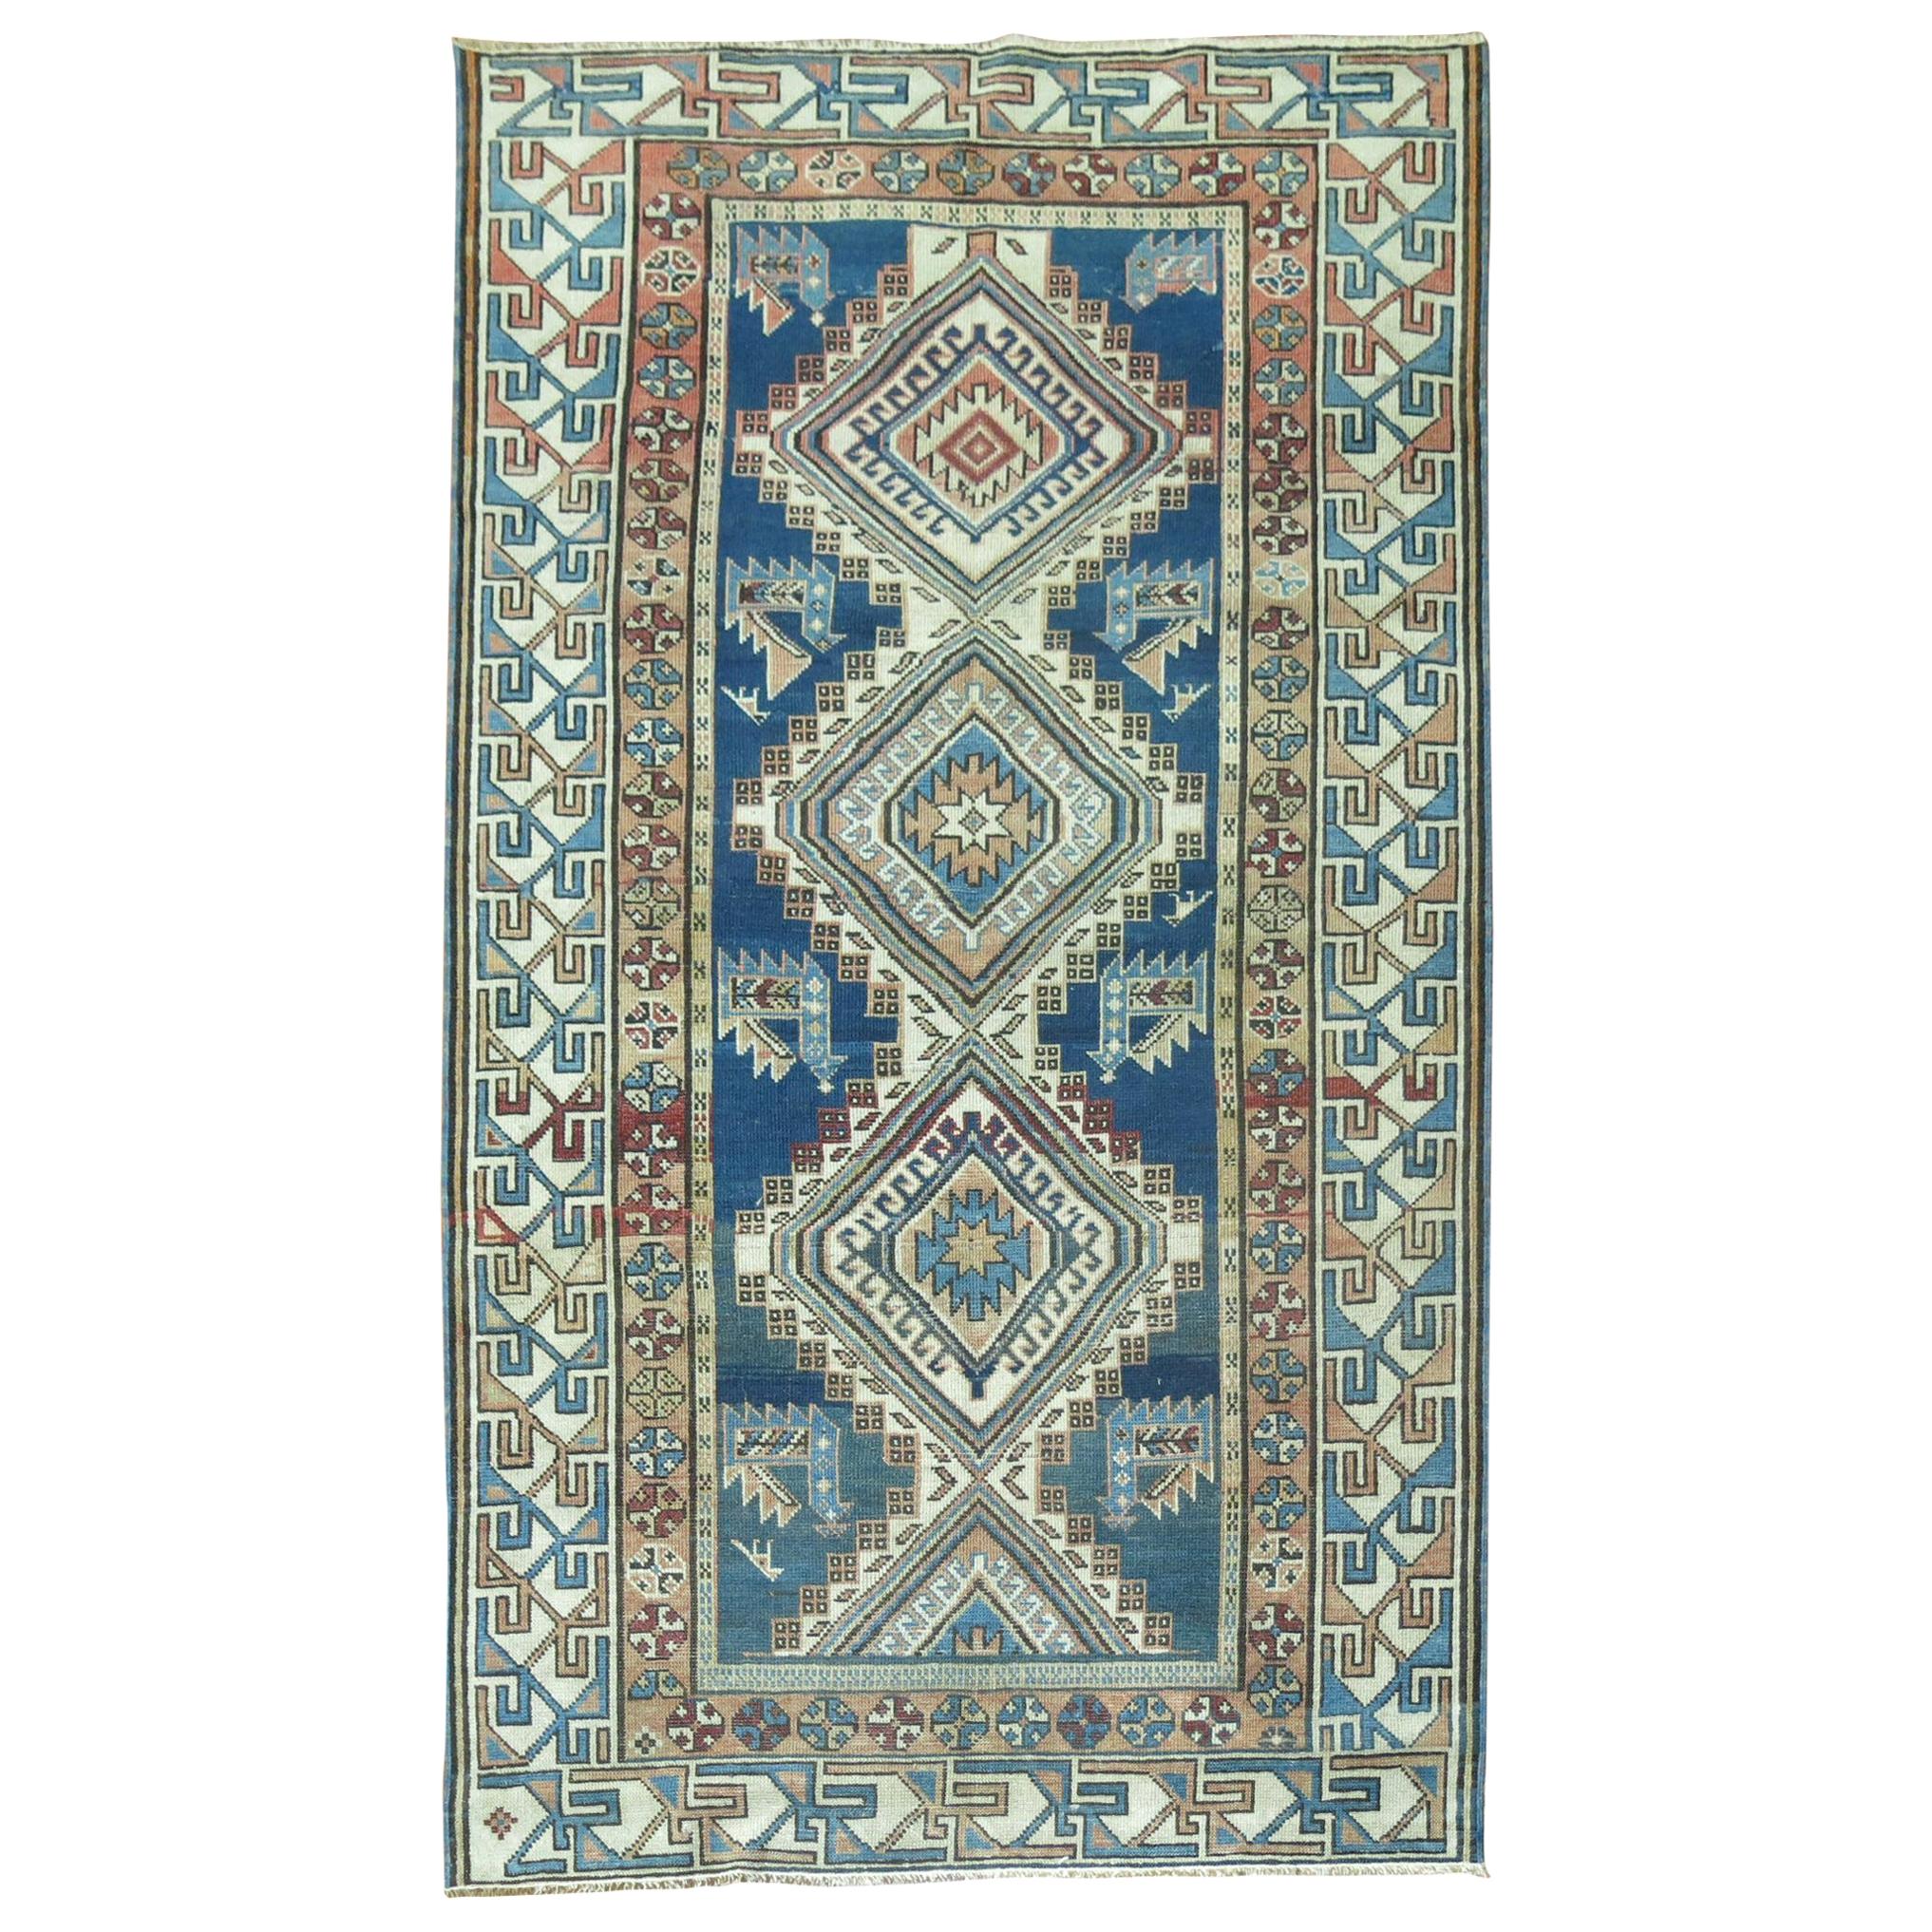 Blauer geometrischer Kazak-Teppich in Blau